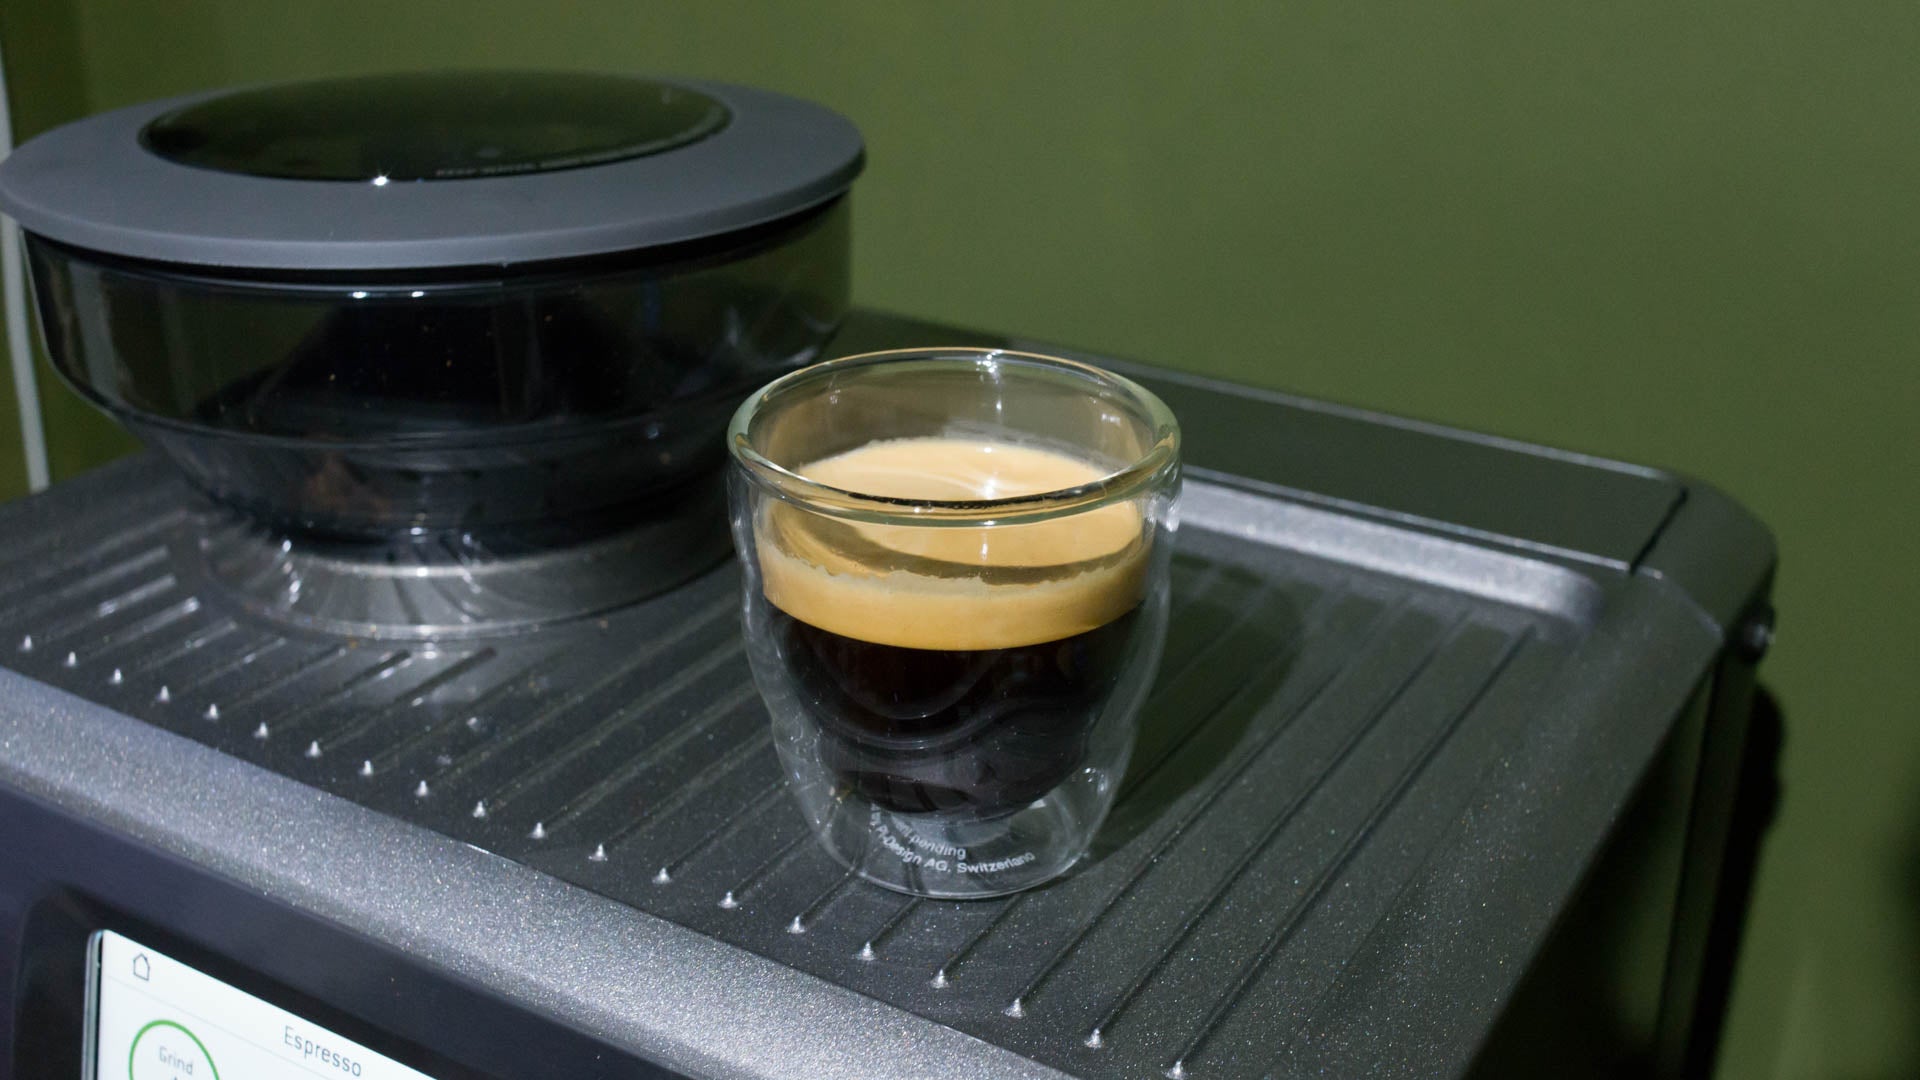 Espresso shot in glass on Sage Barista Touch espresso machine.